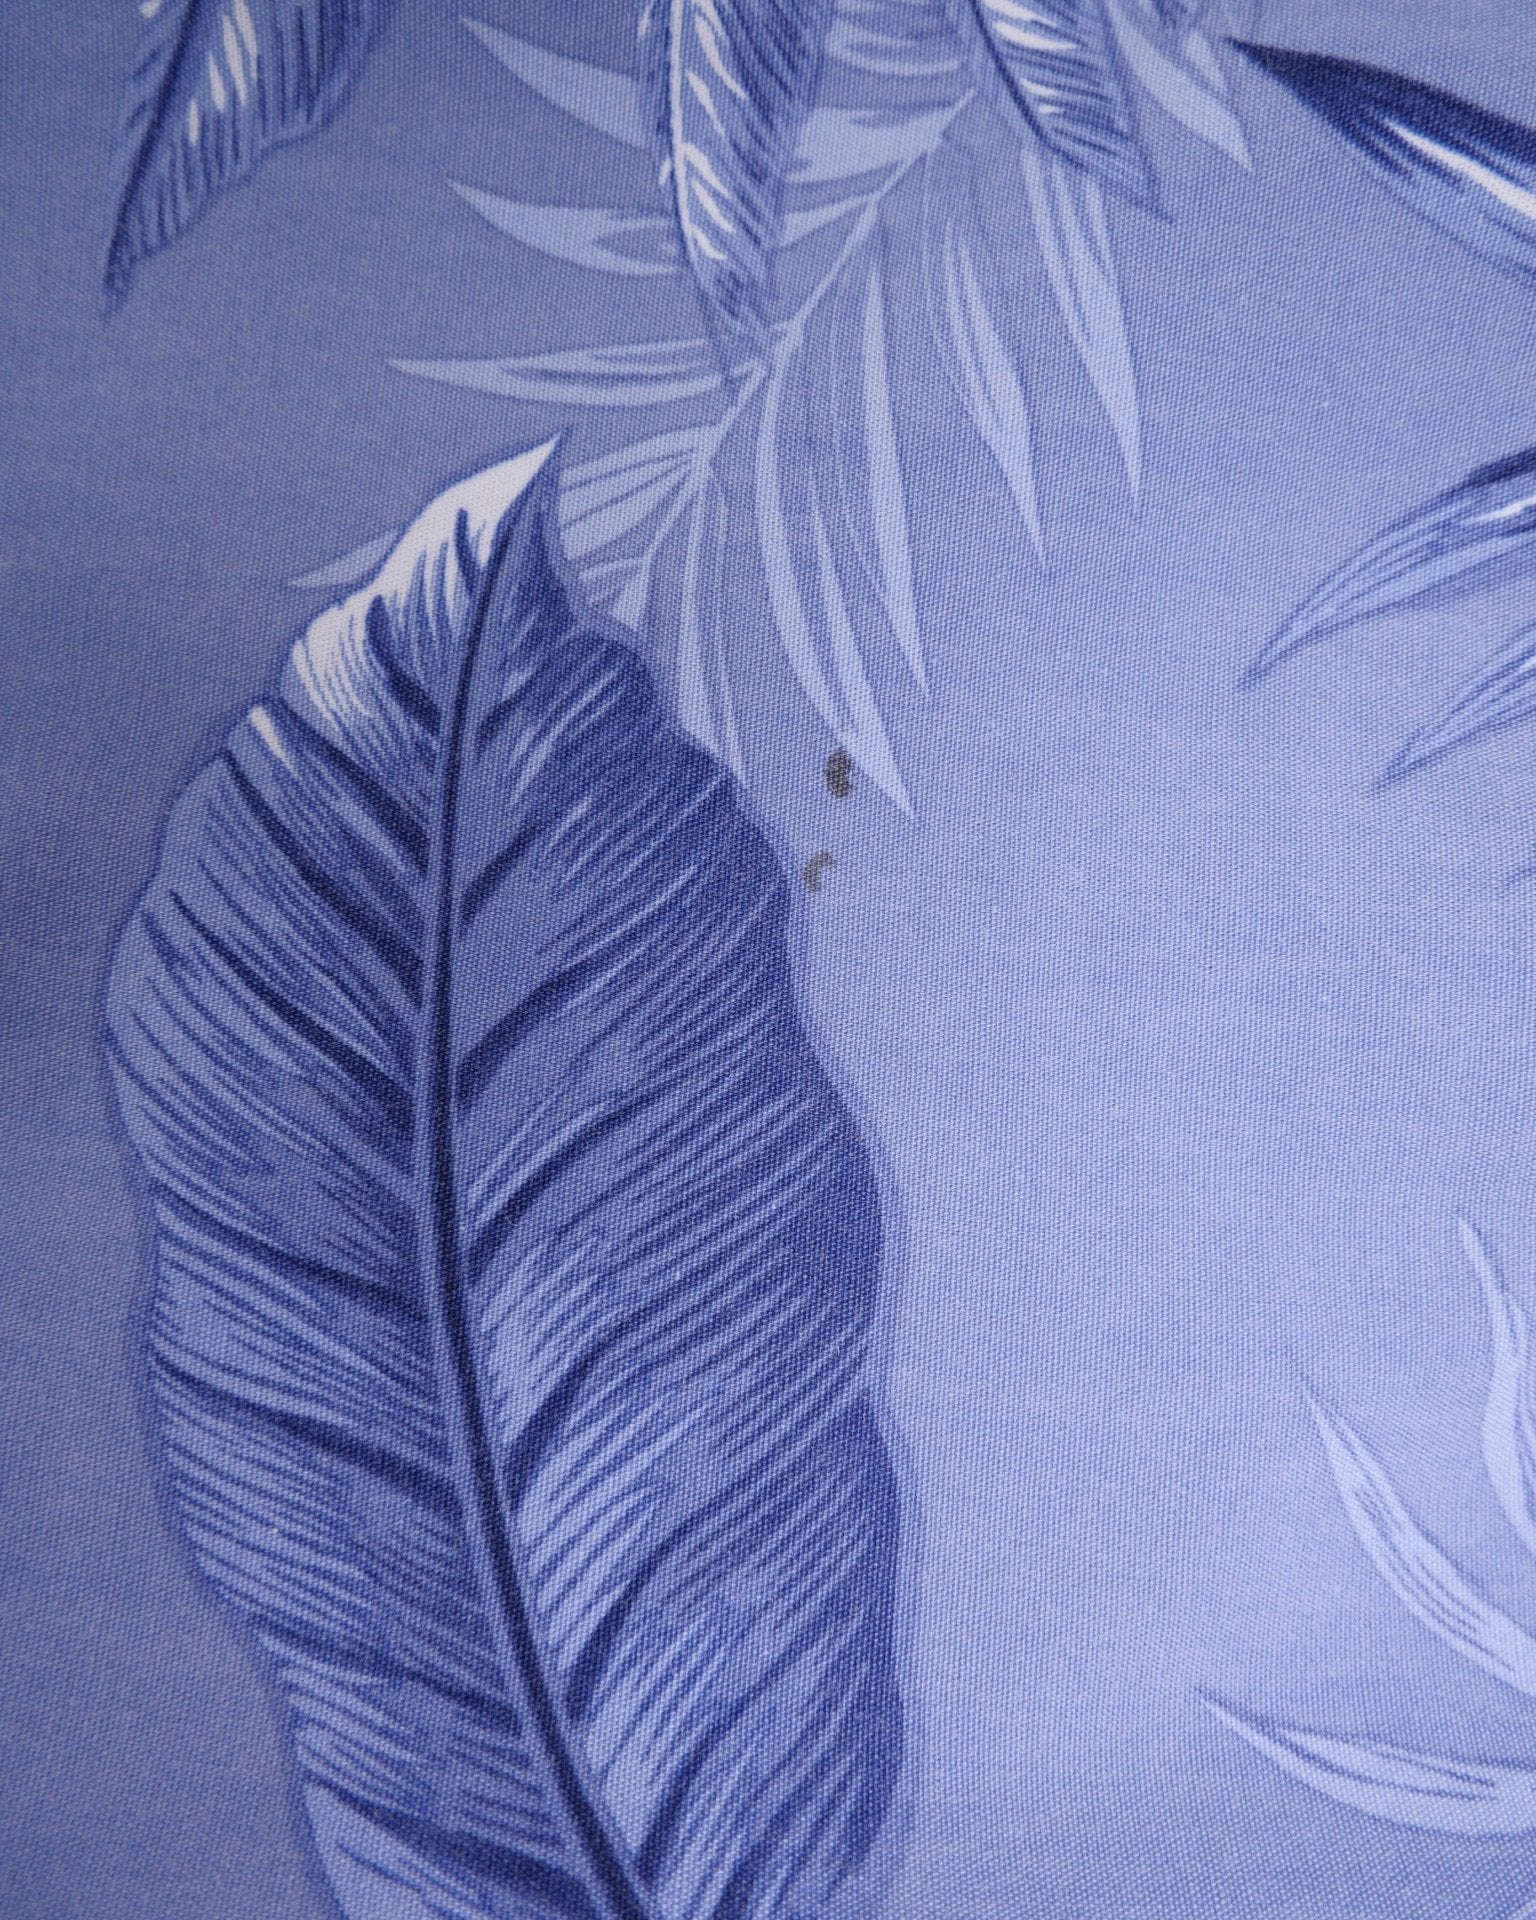 'Leaves' printed Pattern blue s/s Hemd - Peeces